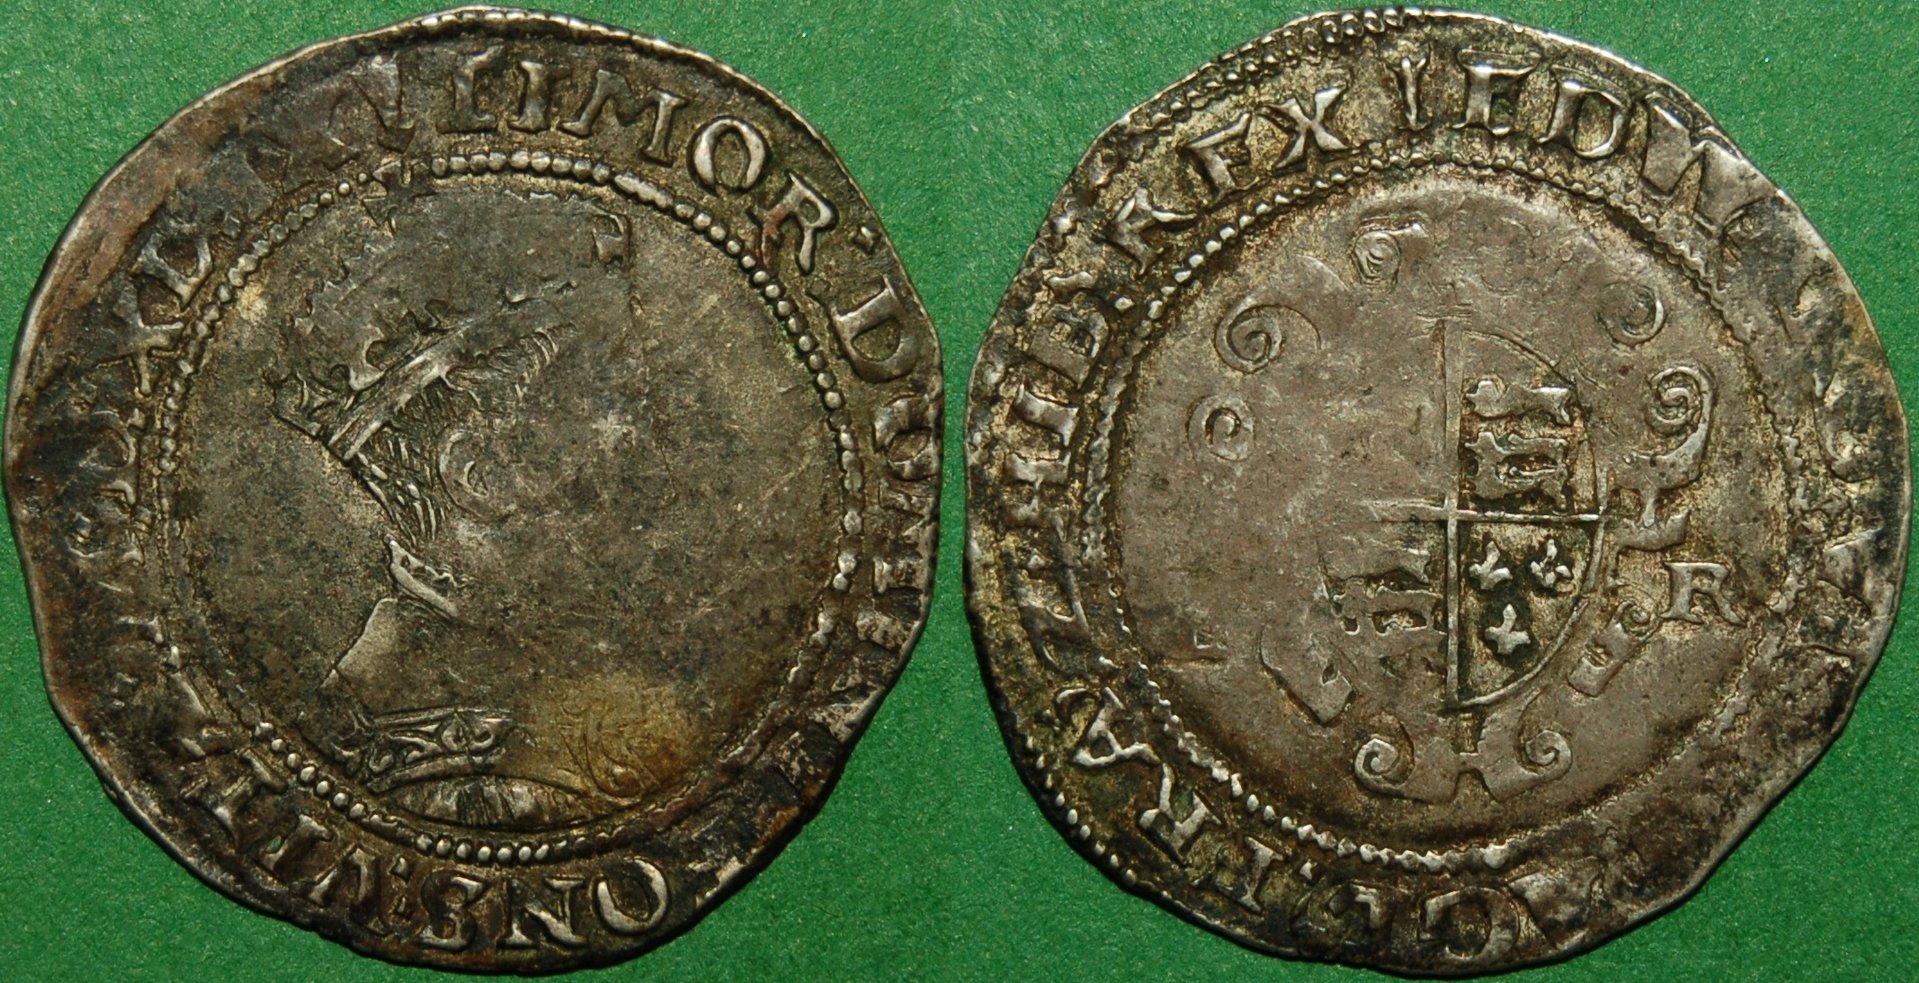 C1315-1549 shilling transposed legends.jpg